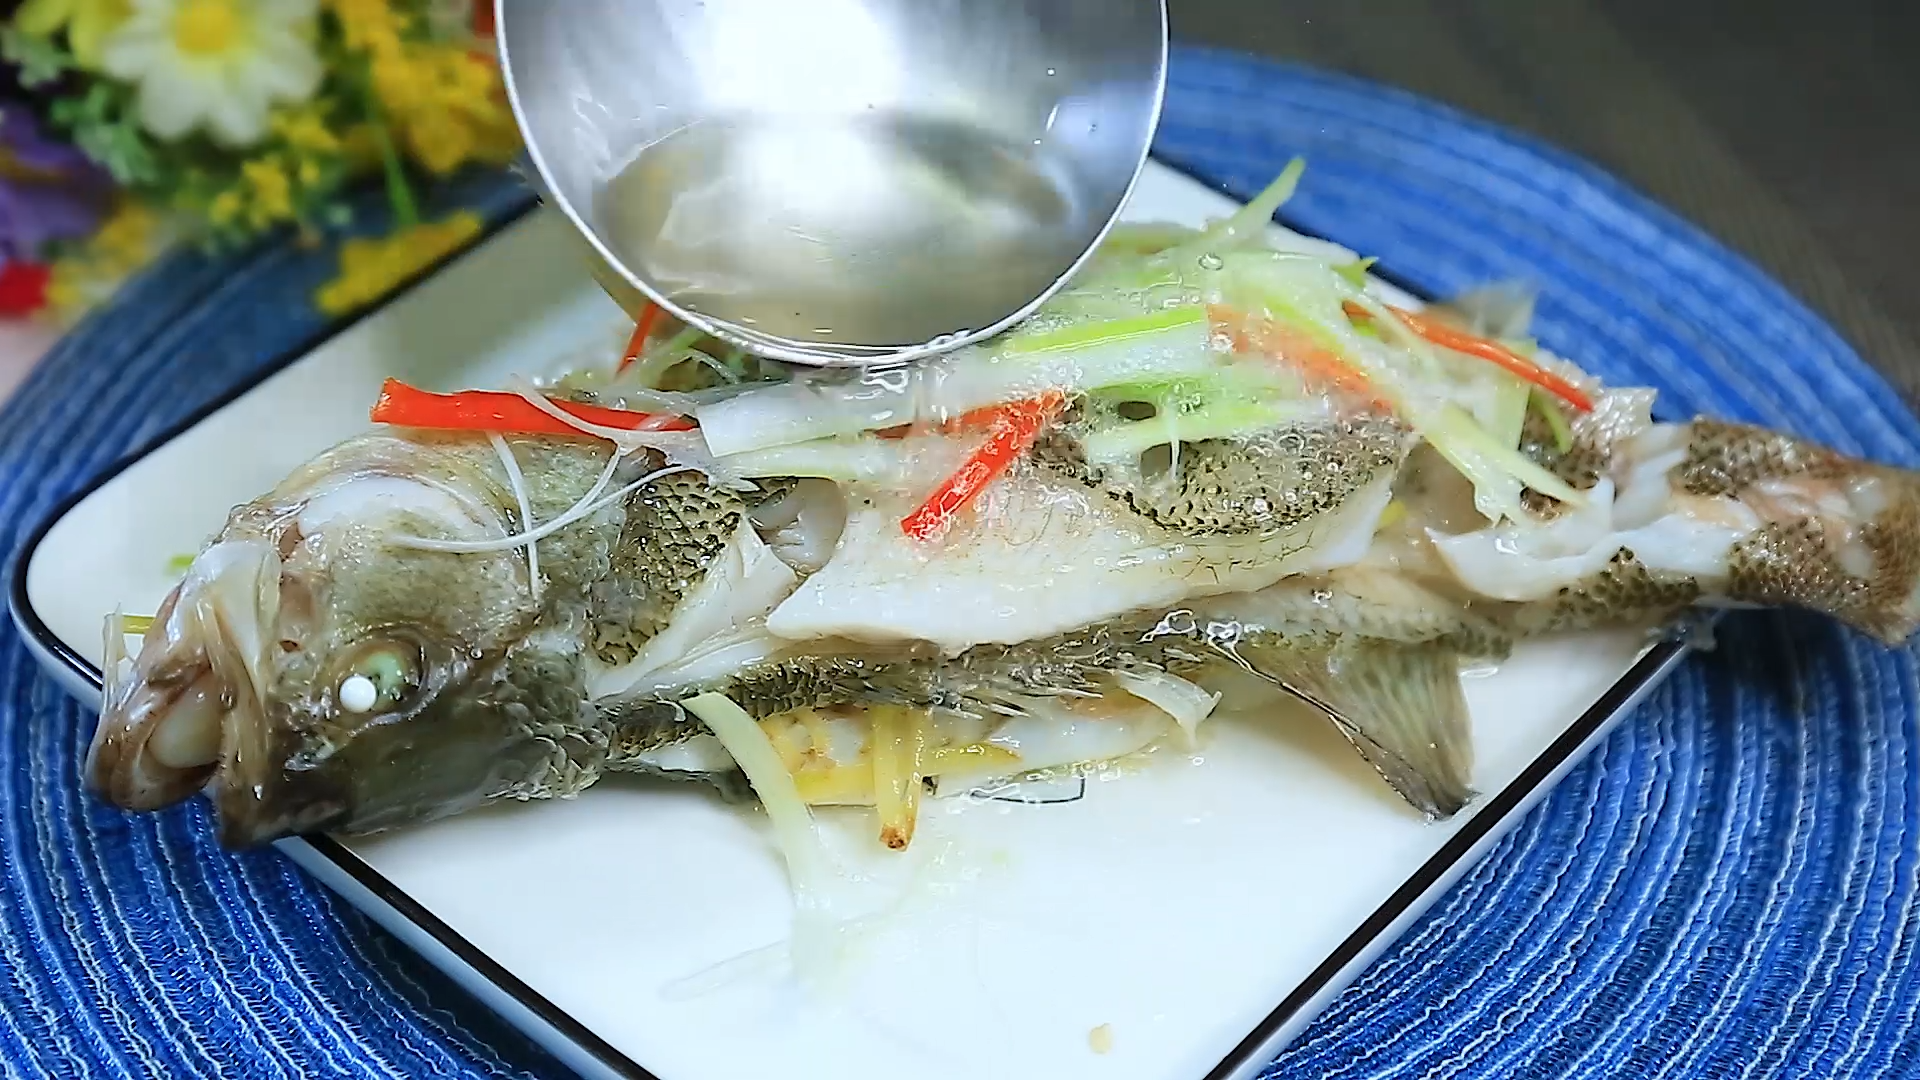 在家做清蒸鲈鱼到底蒸多久才好吃呢？是用冷水呢？还是热水蒸呢？